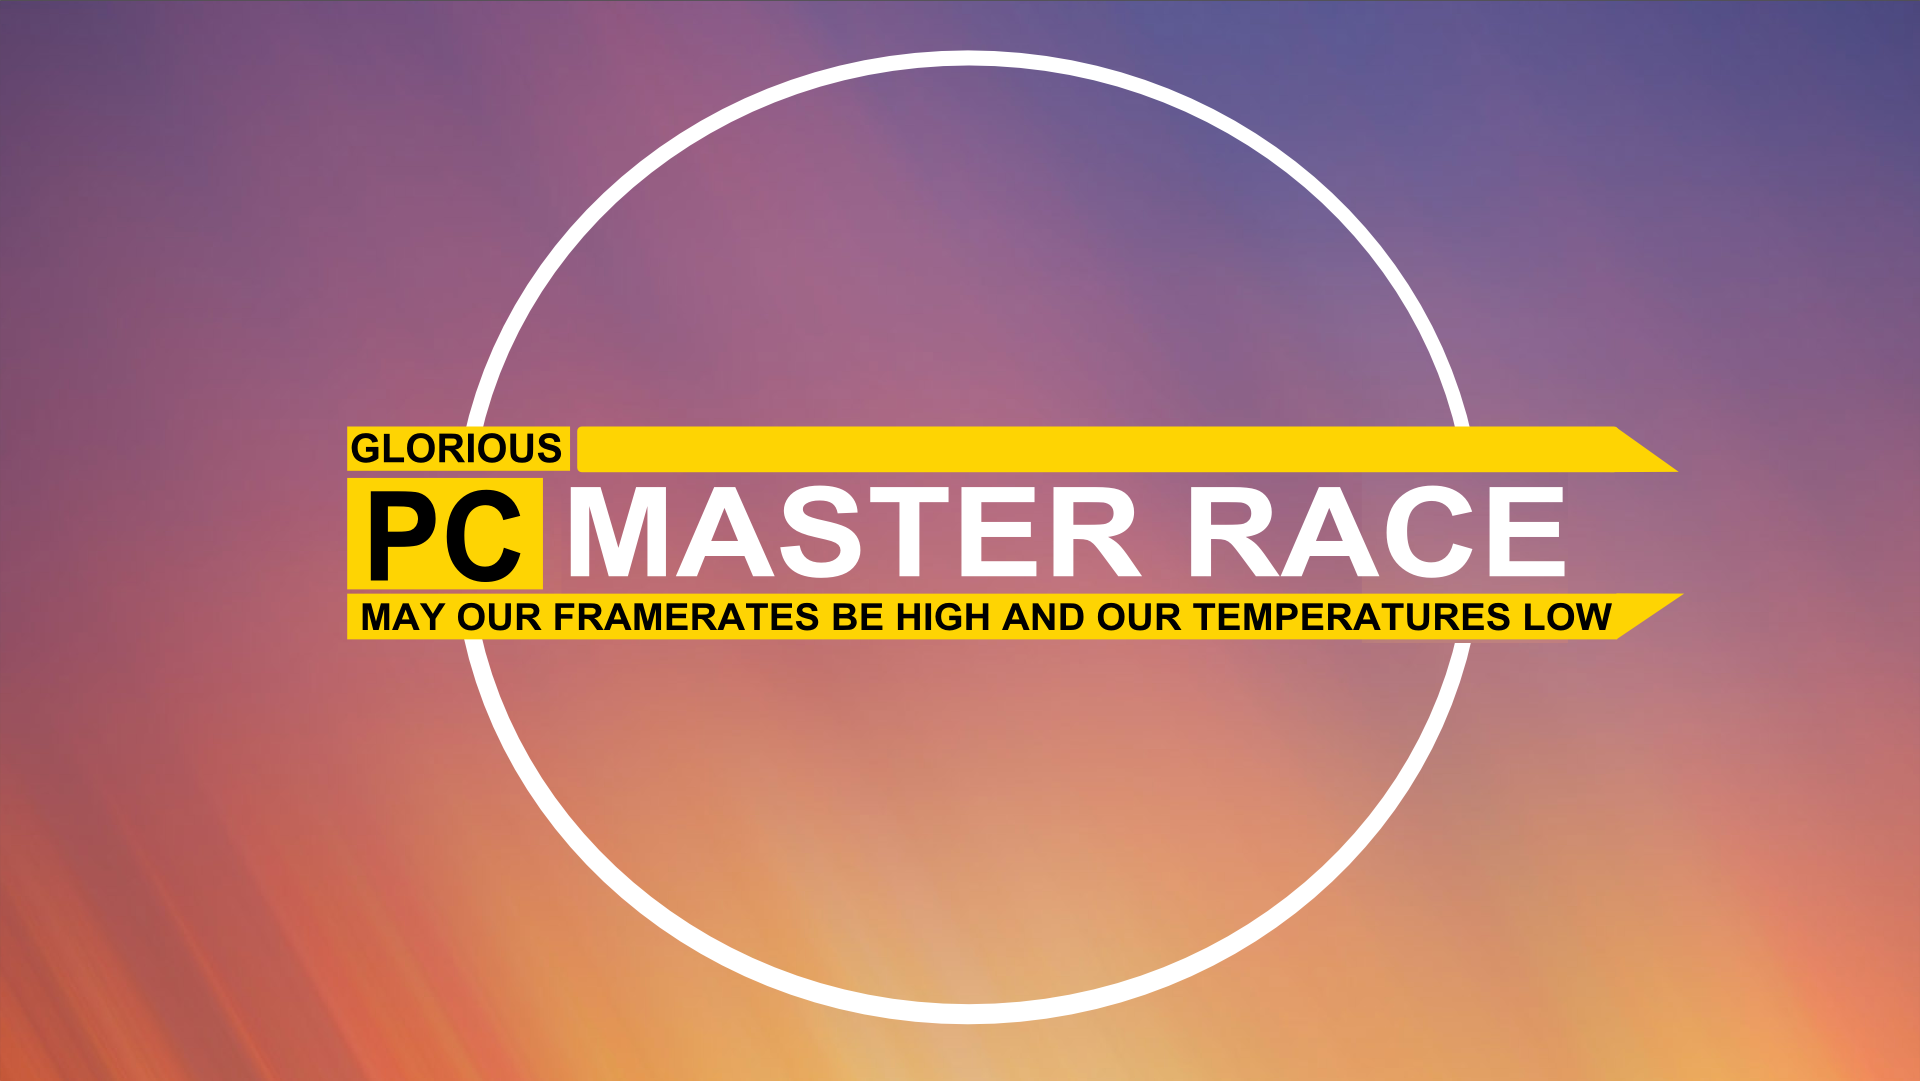 PC Master Race 1920x1081